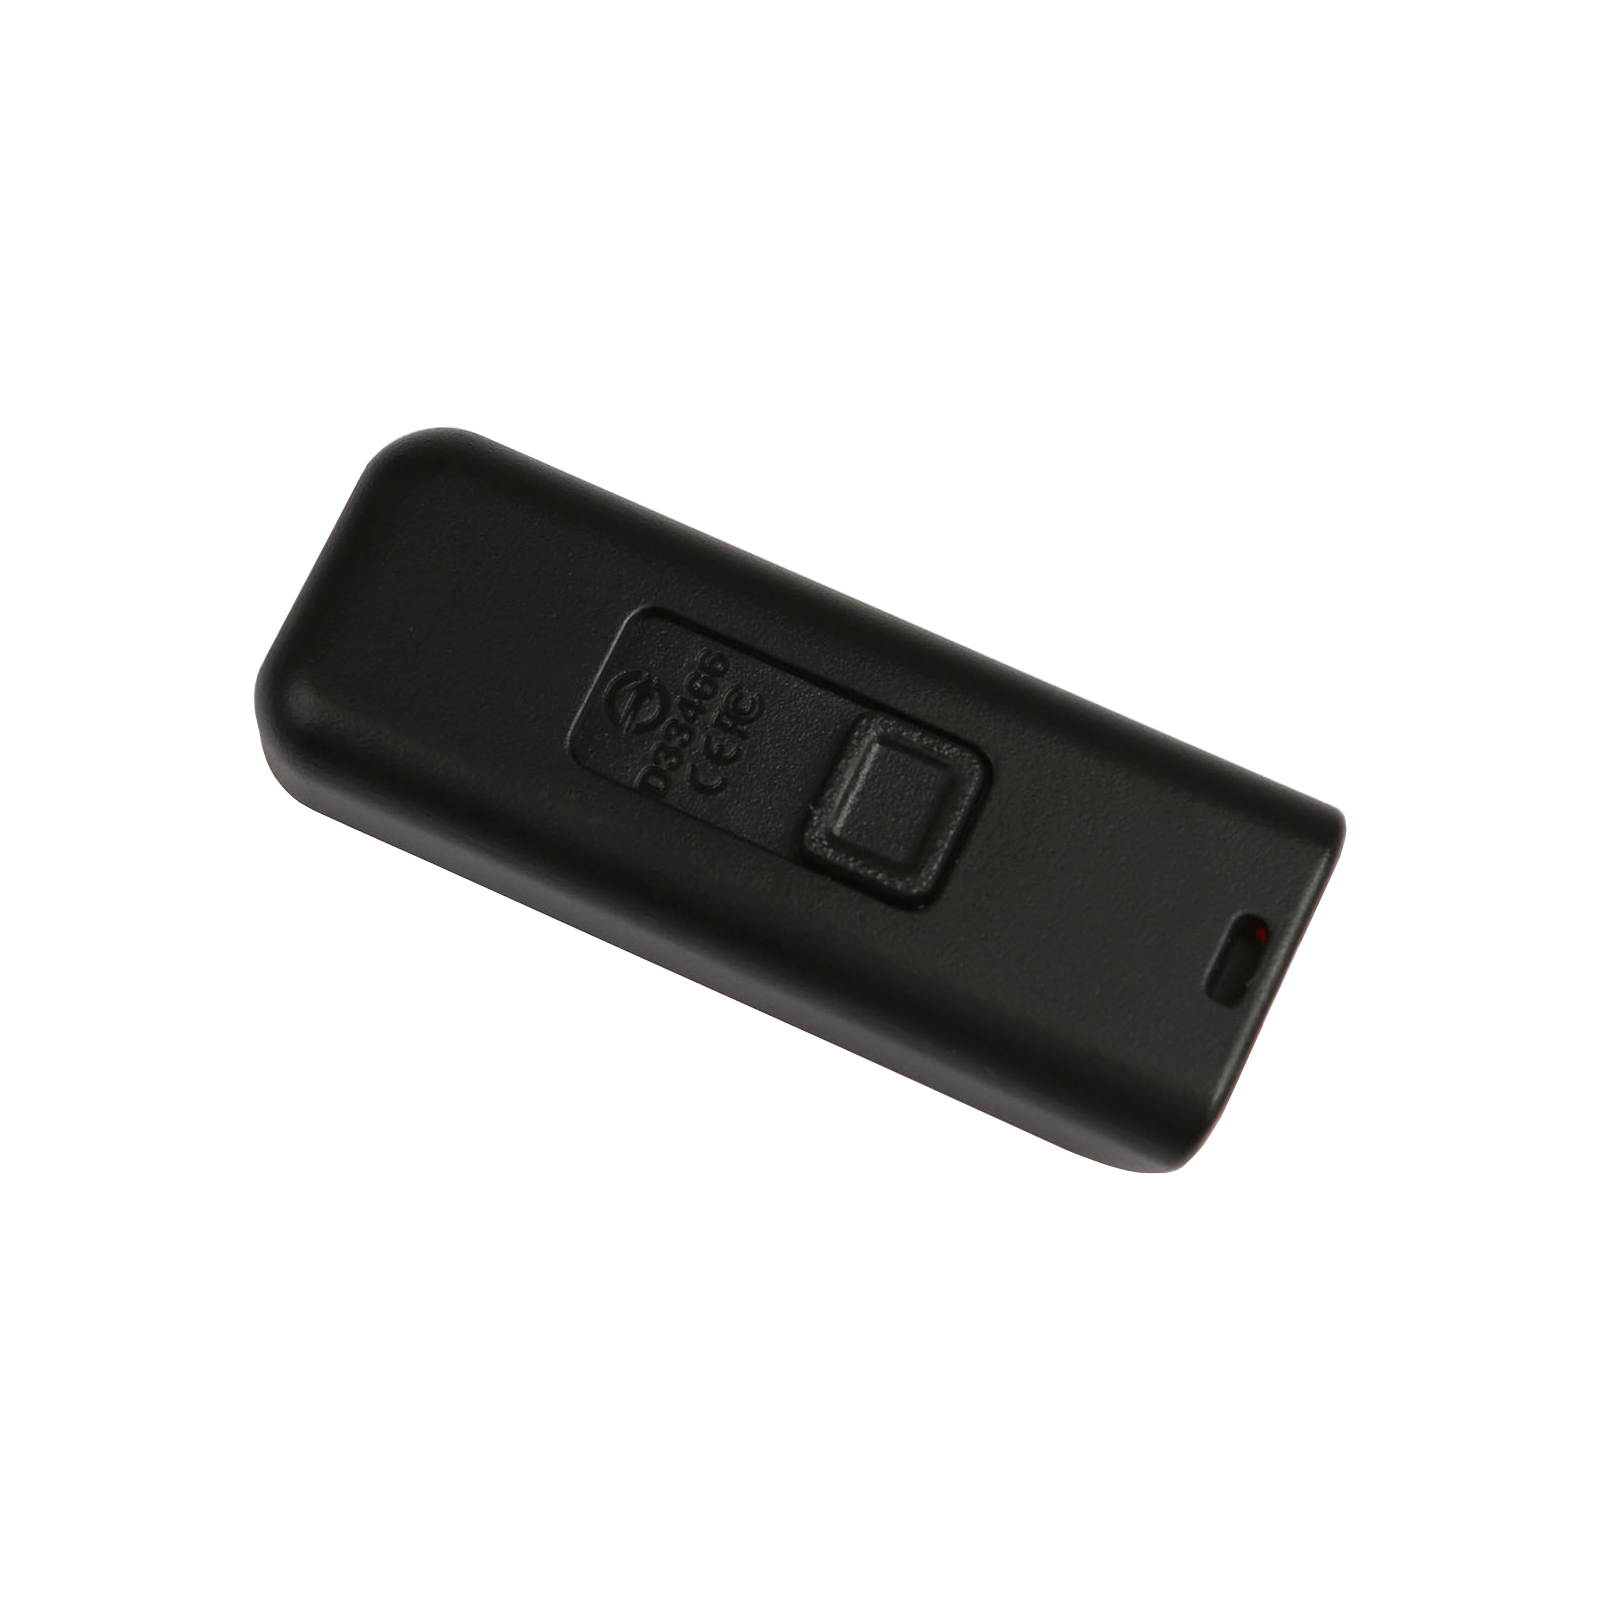 USB флеш накопитель Apacer 64GB AH334 pink USB 2.0 (AP64GAH334P-1) изображение 4